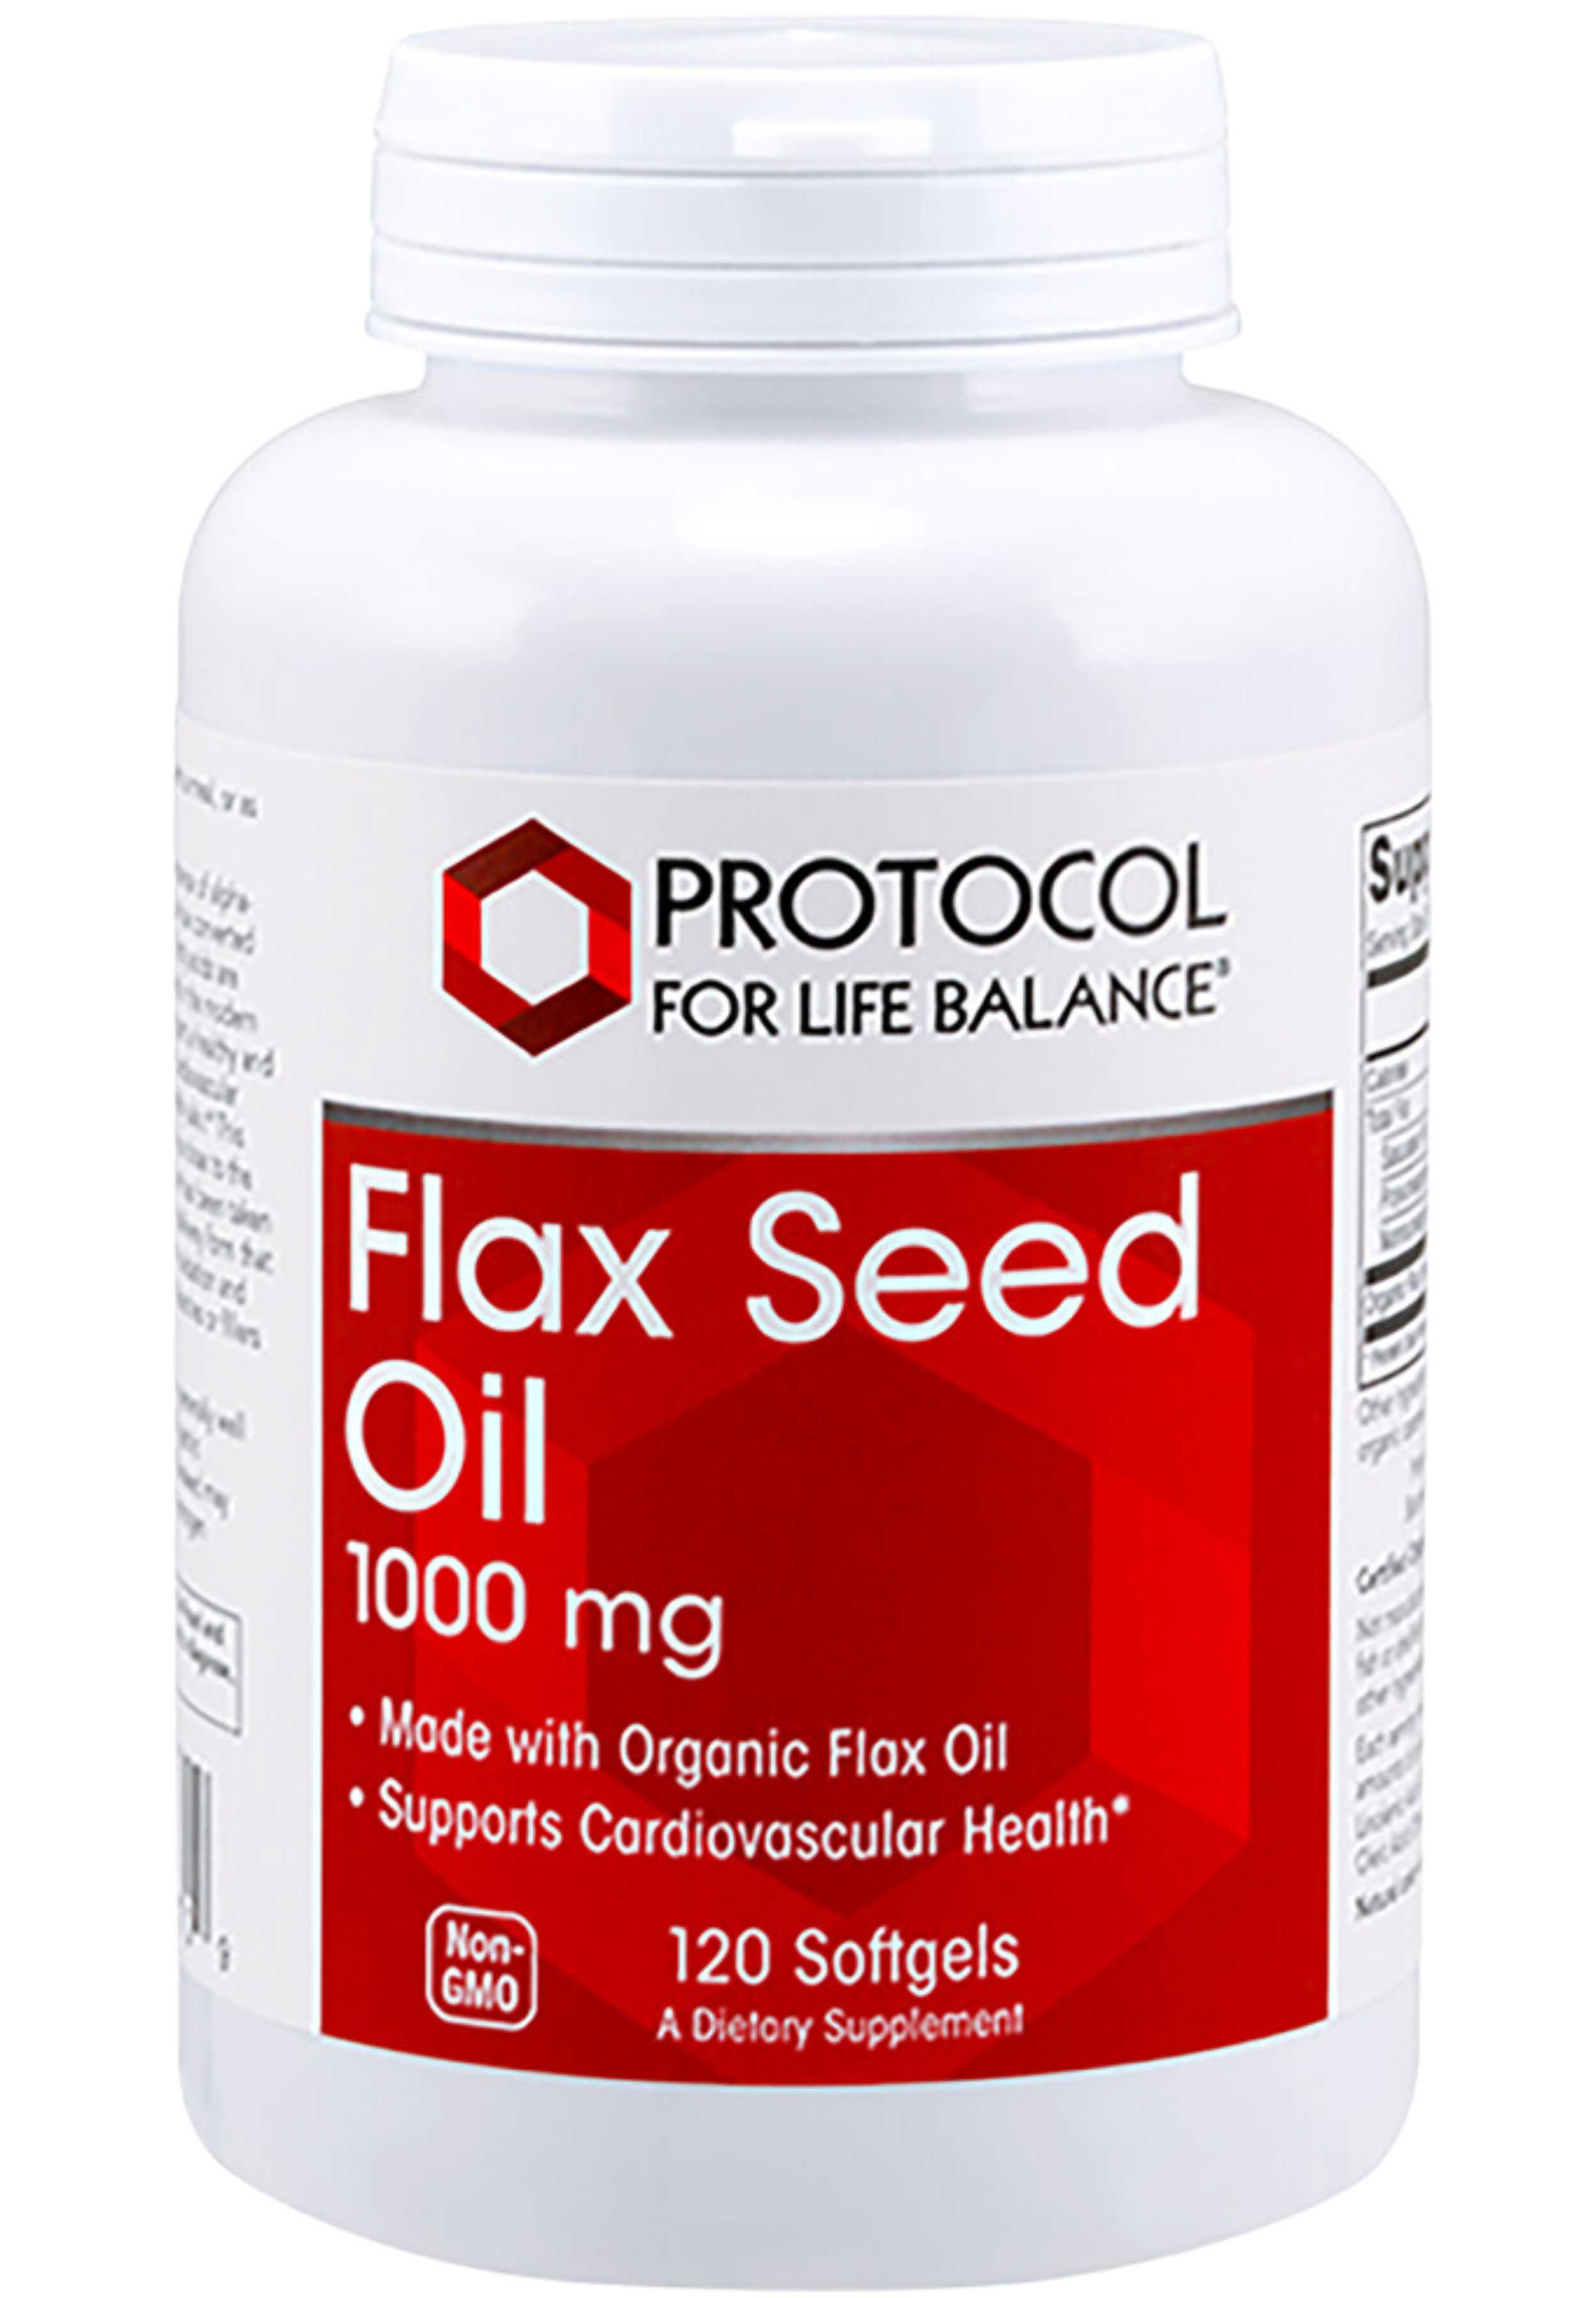 Protocol for Life Balance Flax Seed Oil 1000 mg